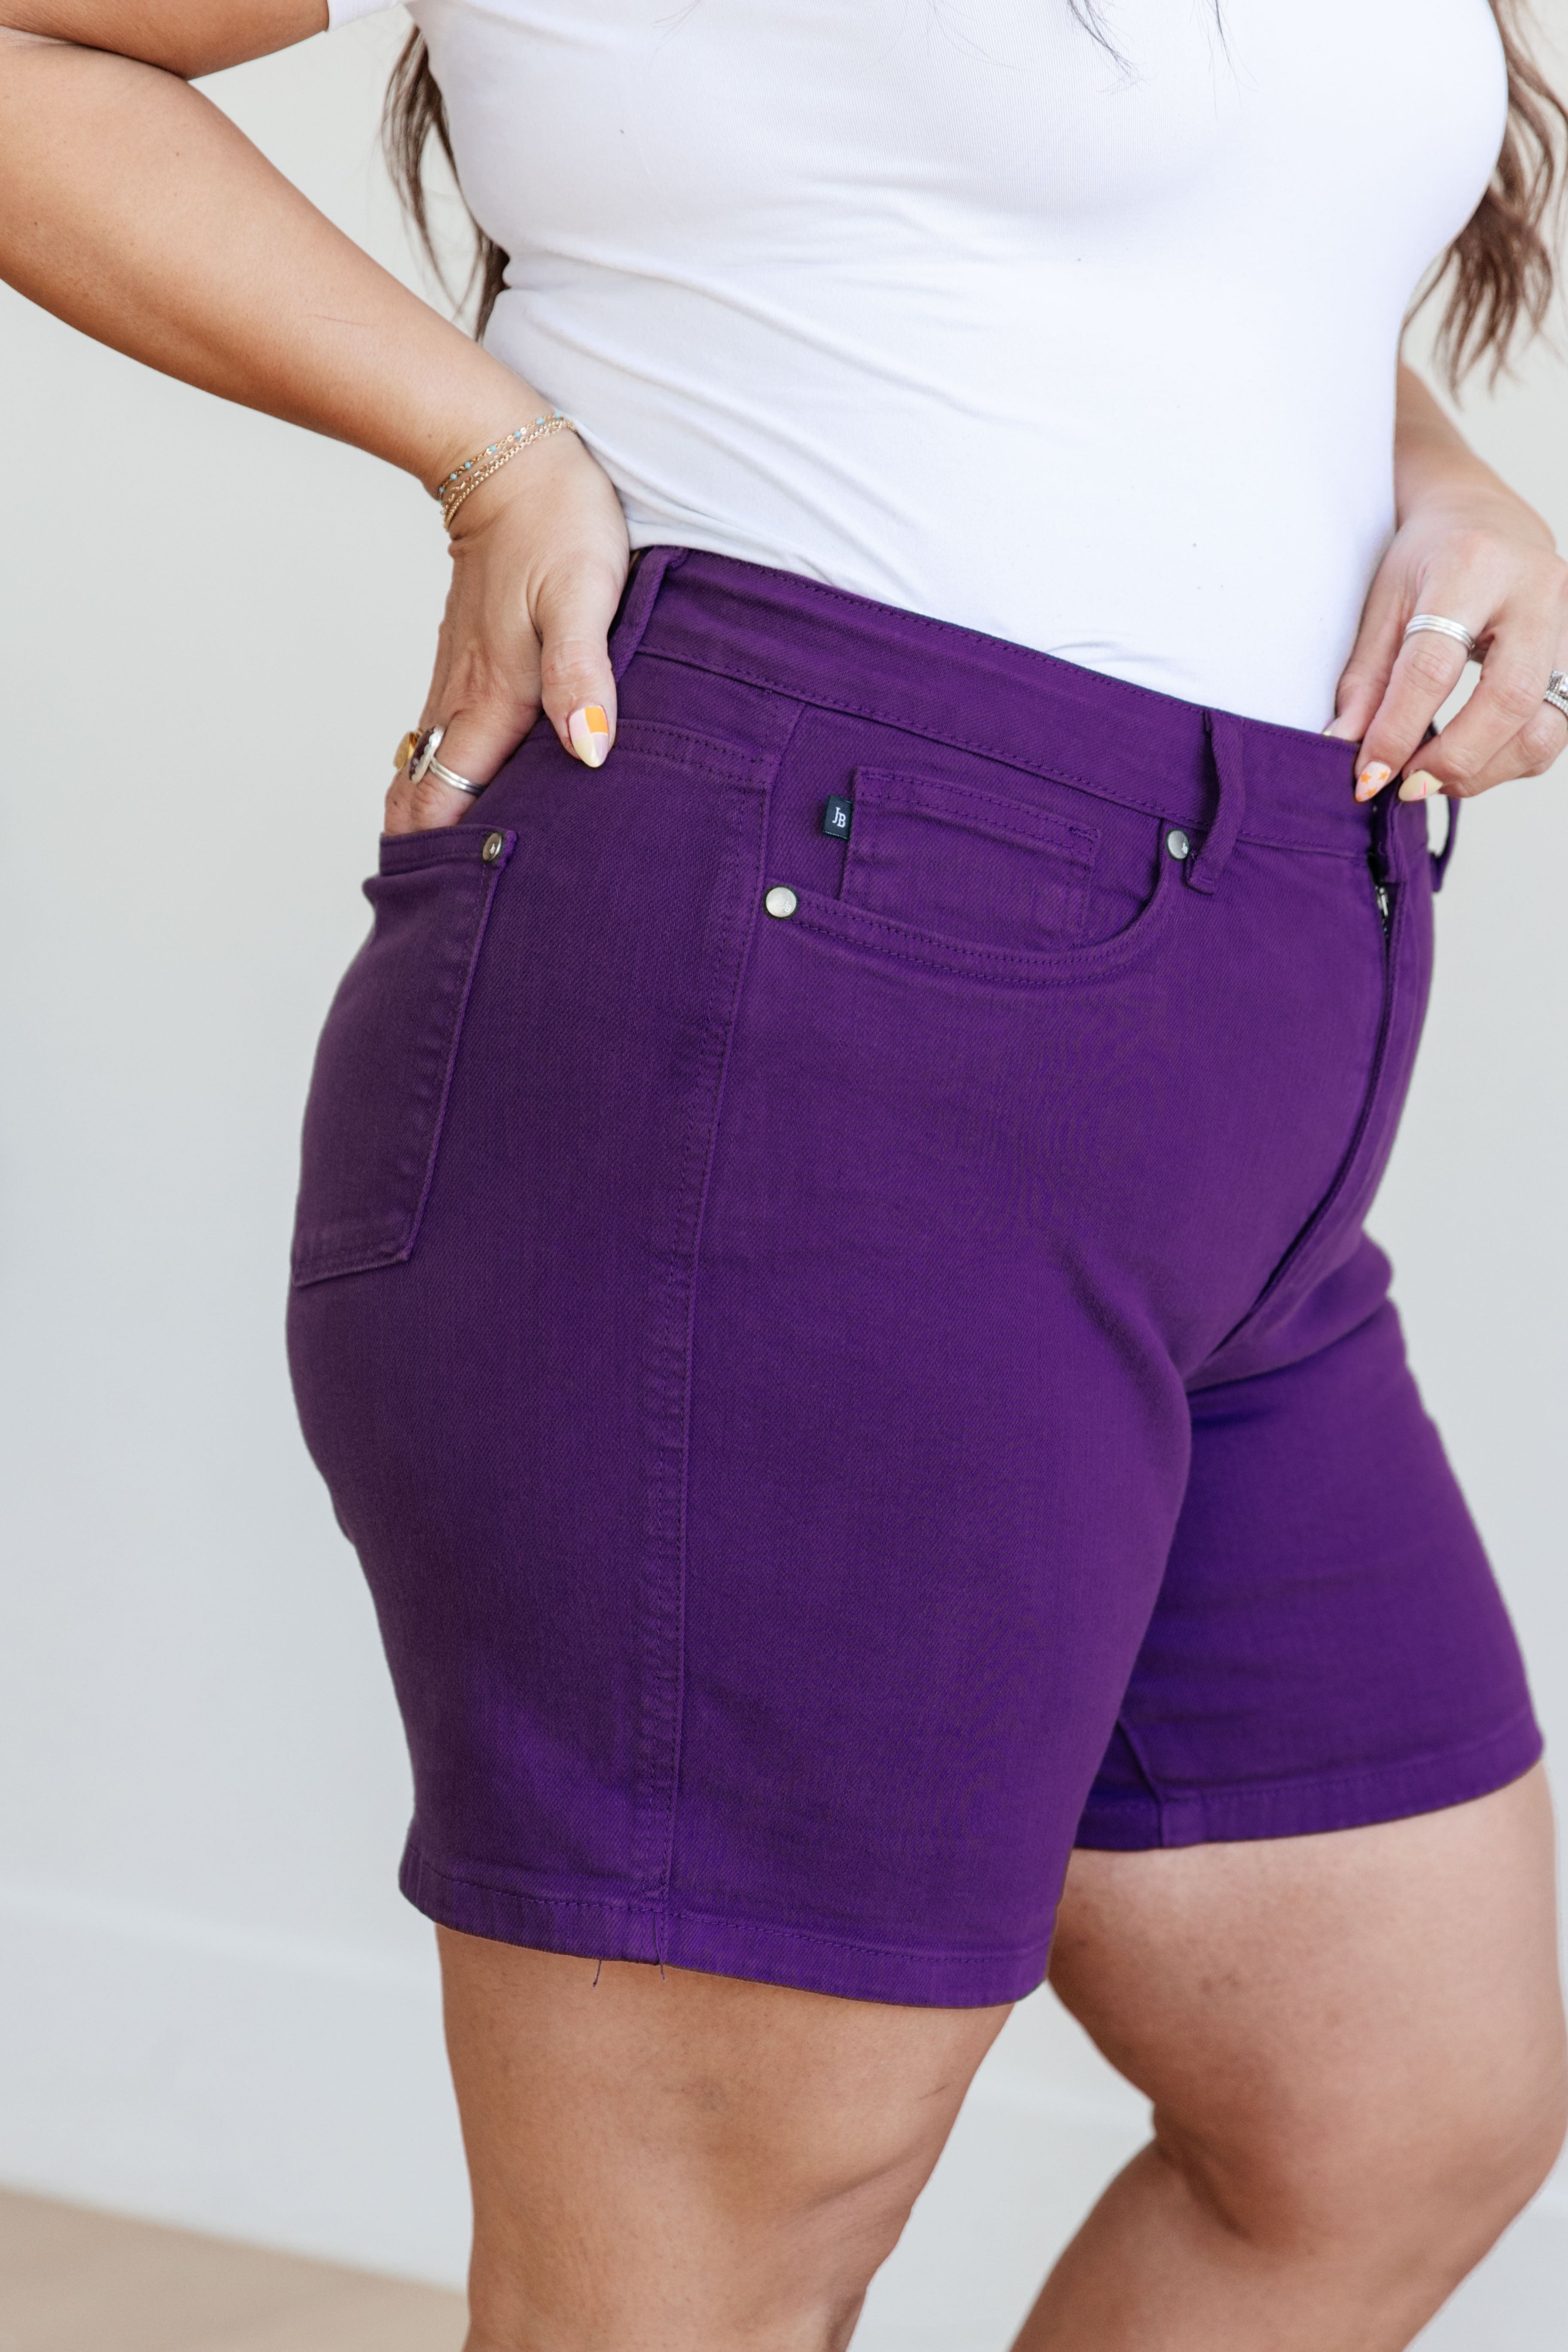 Judy Blue Jessica High Rise Tummy Control Vintage Wash Cuffed Shorts